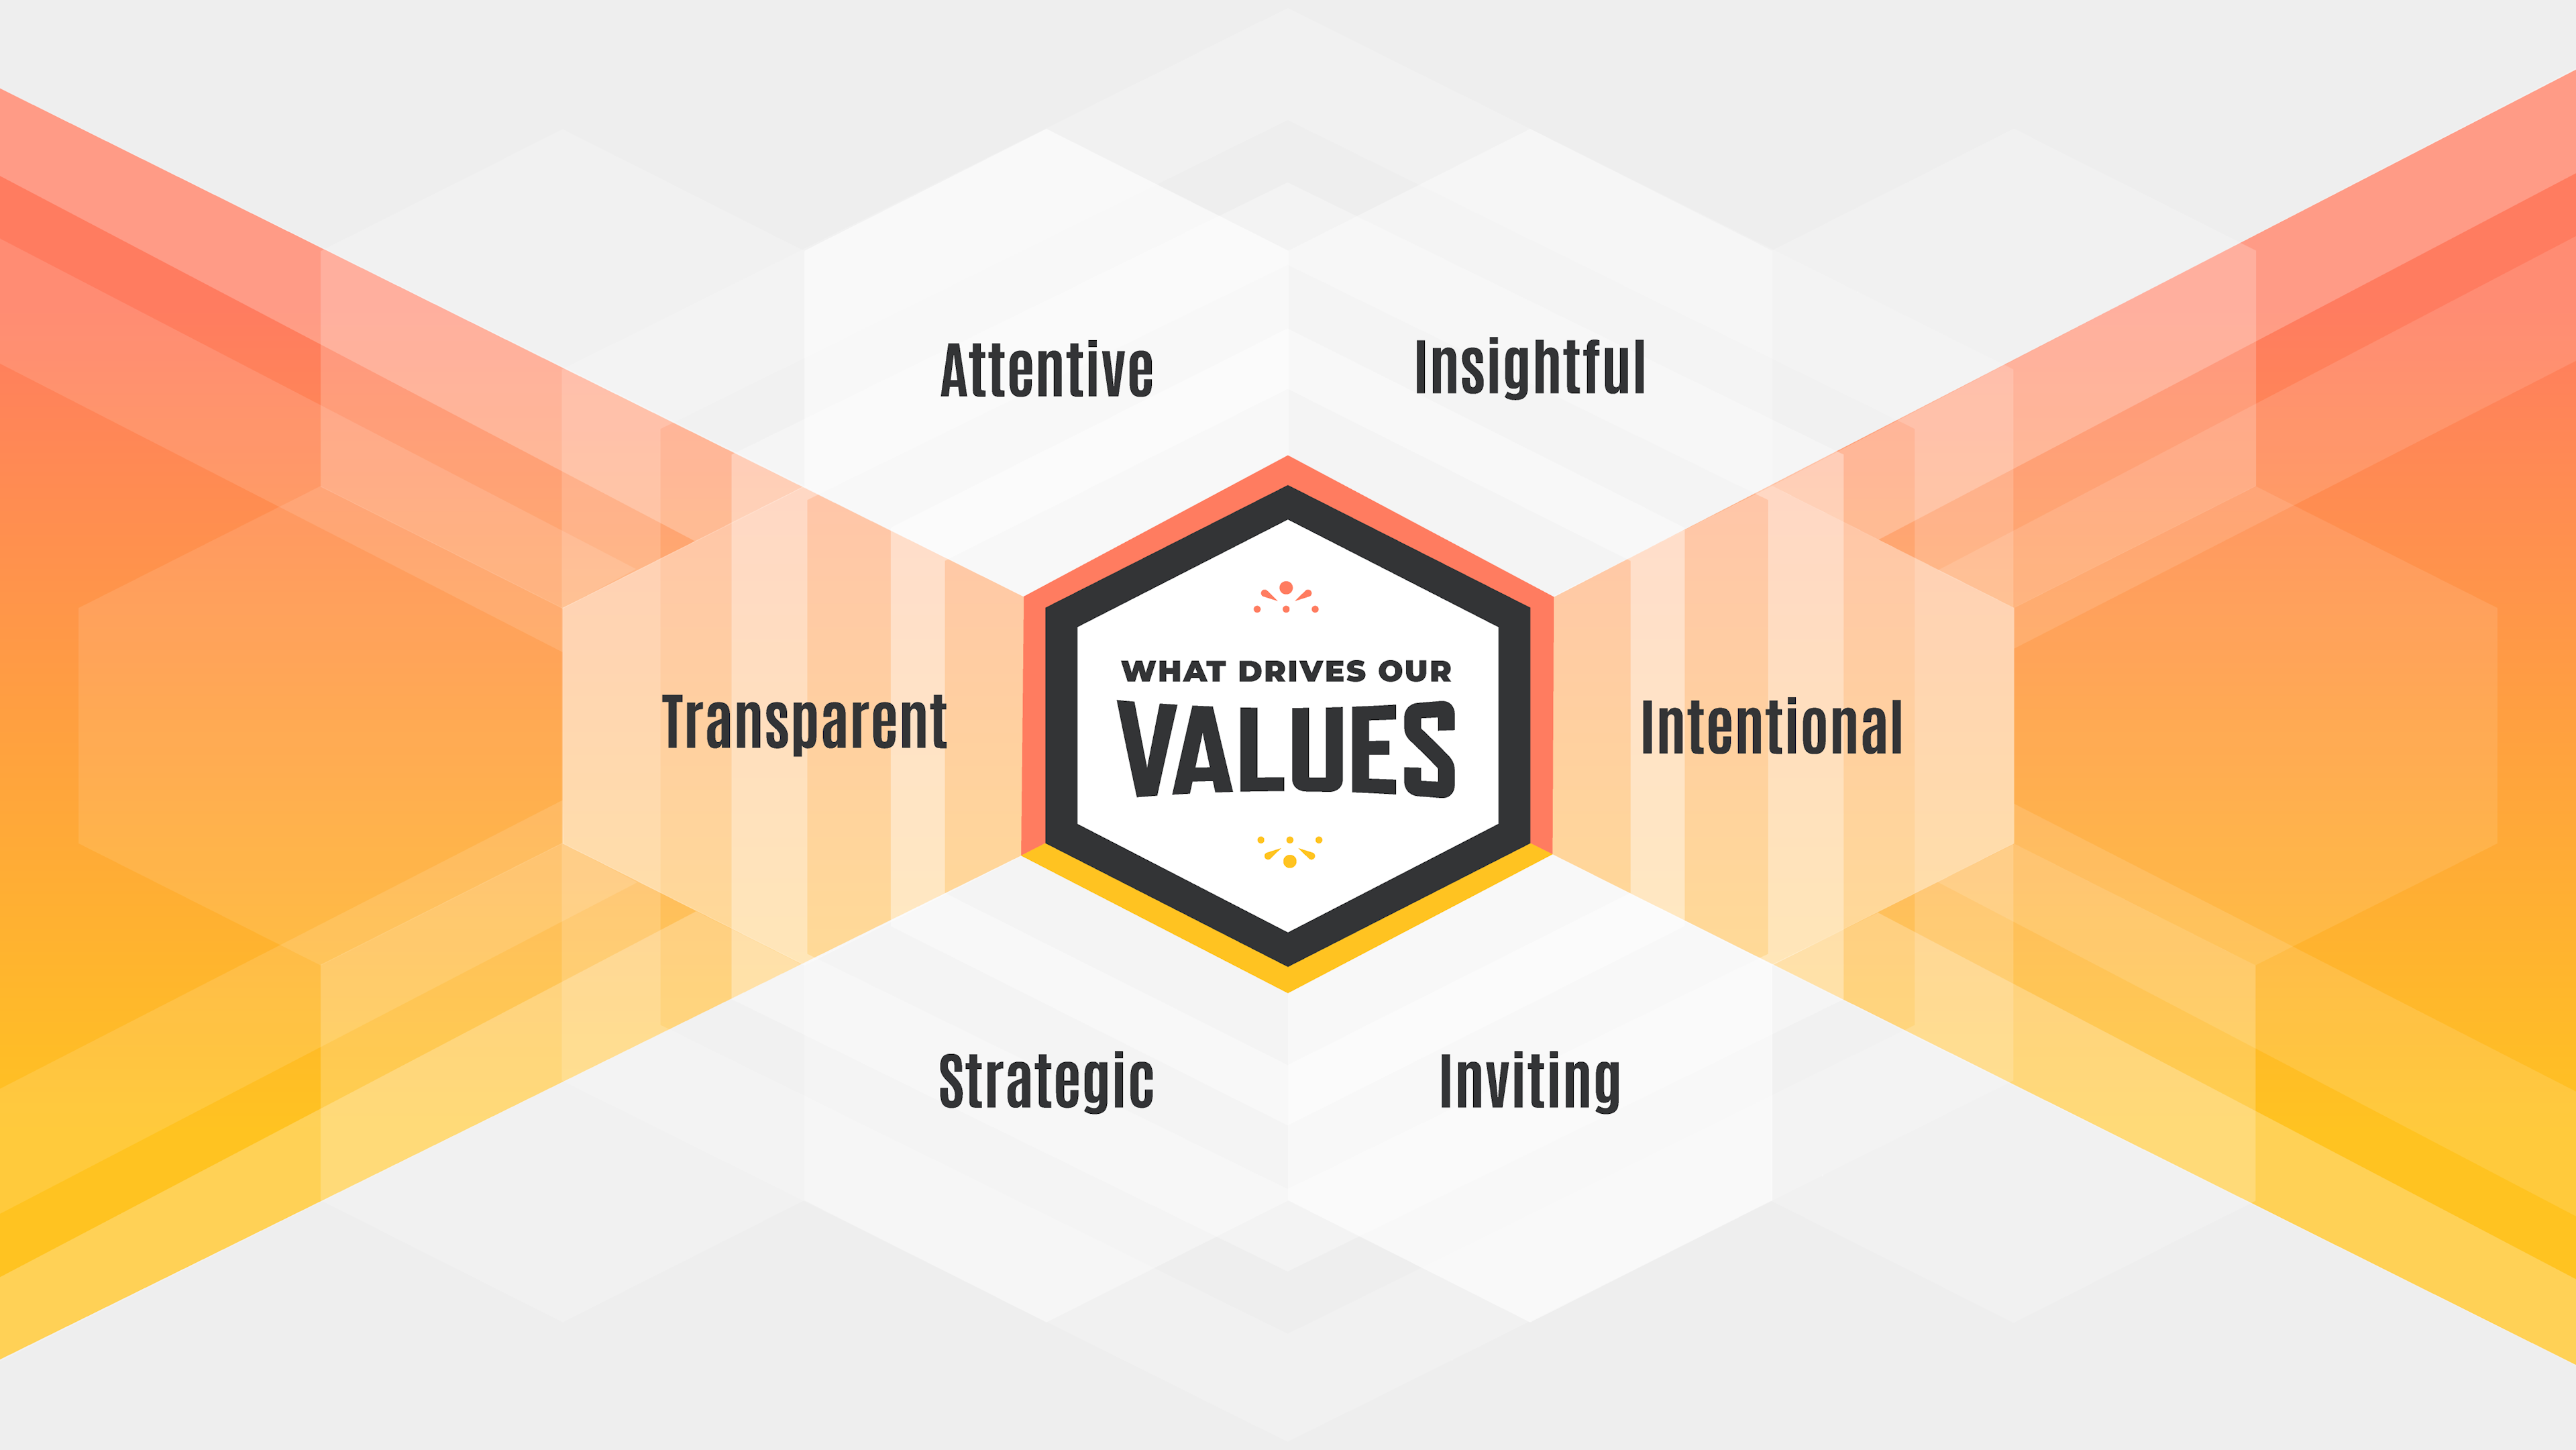 Our values desktop